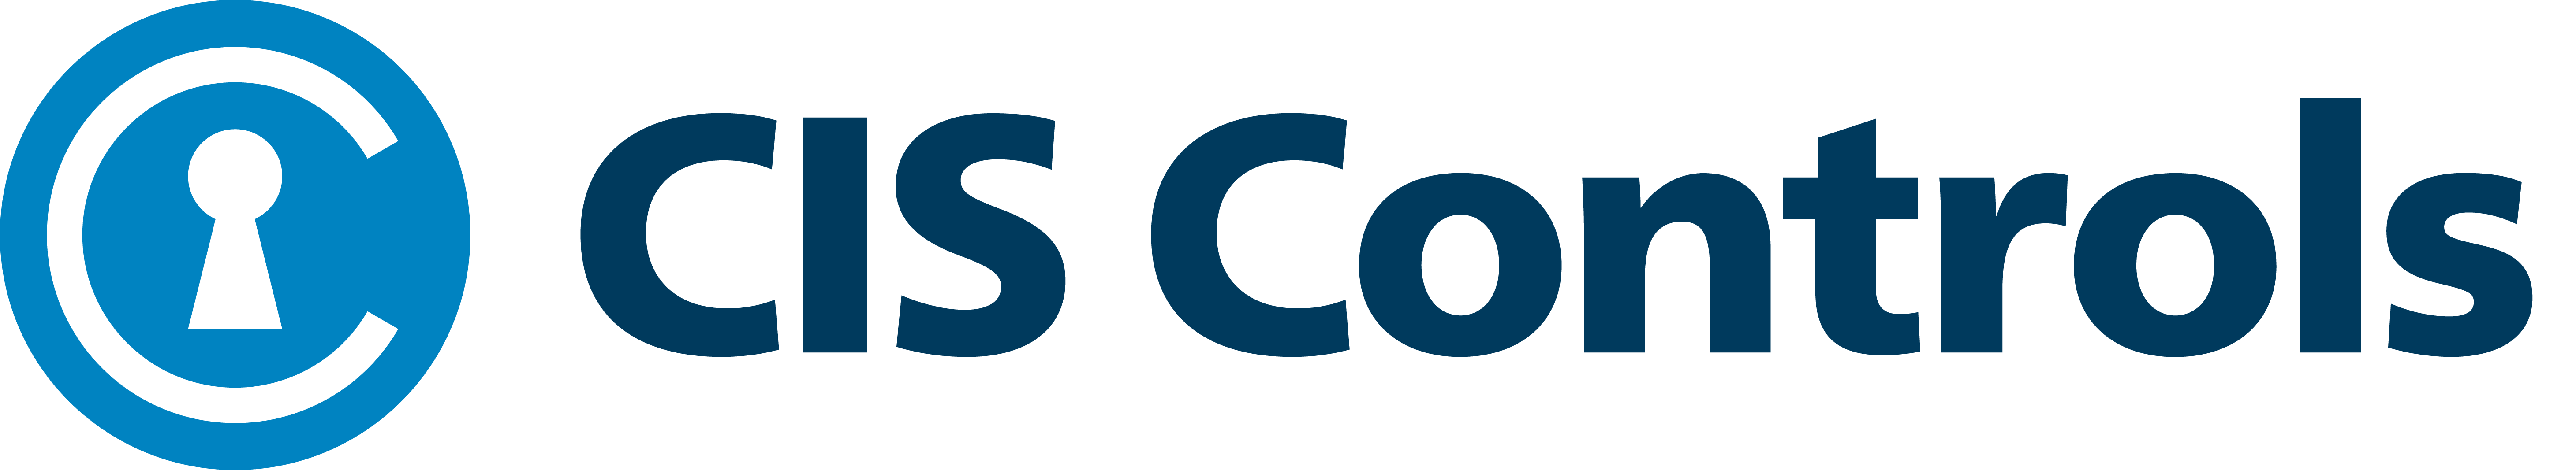 CIS-Controls -logo